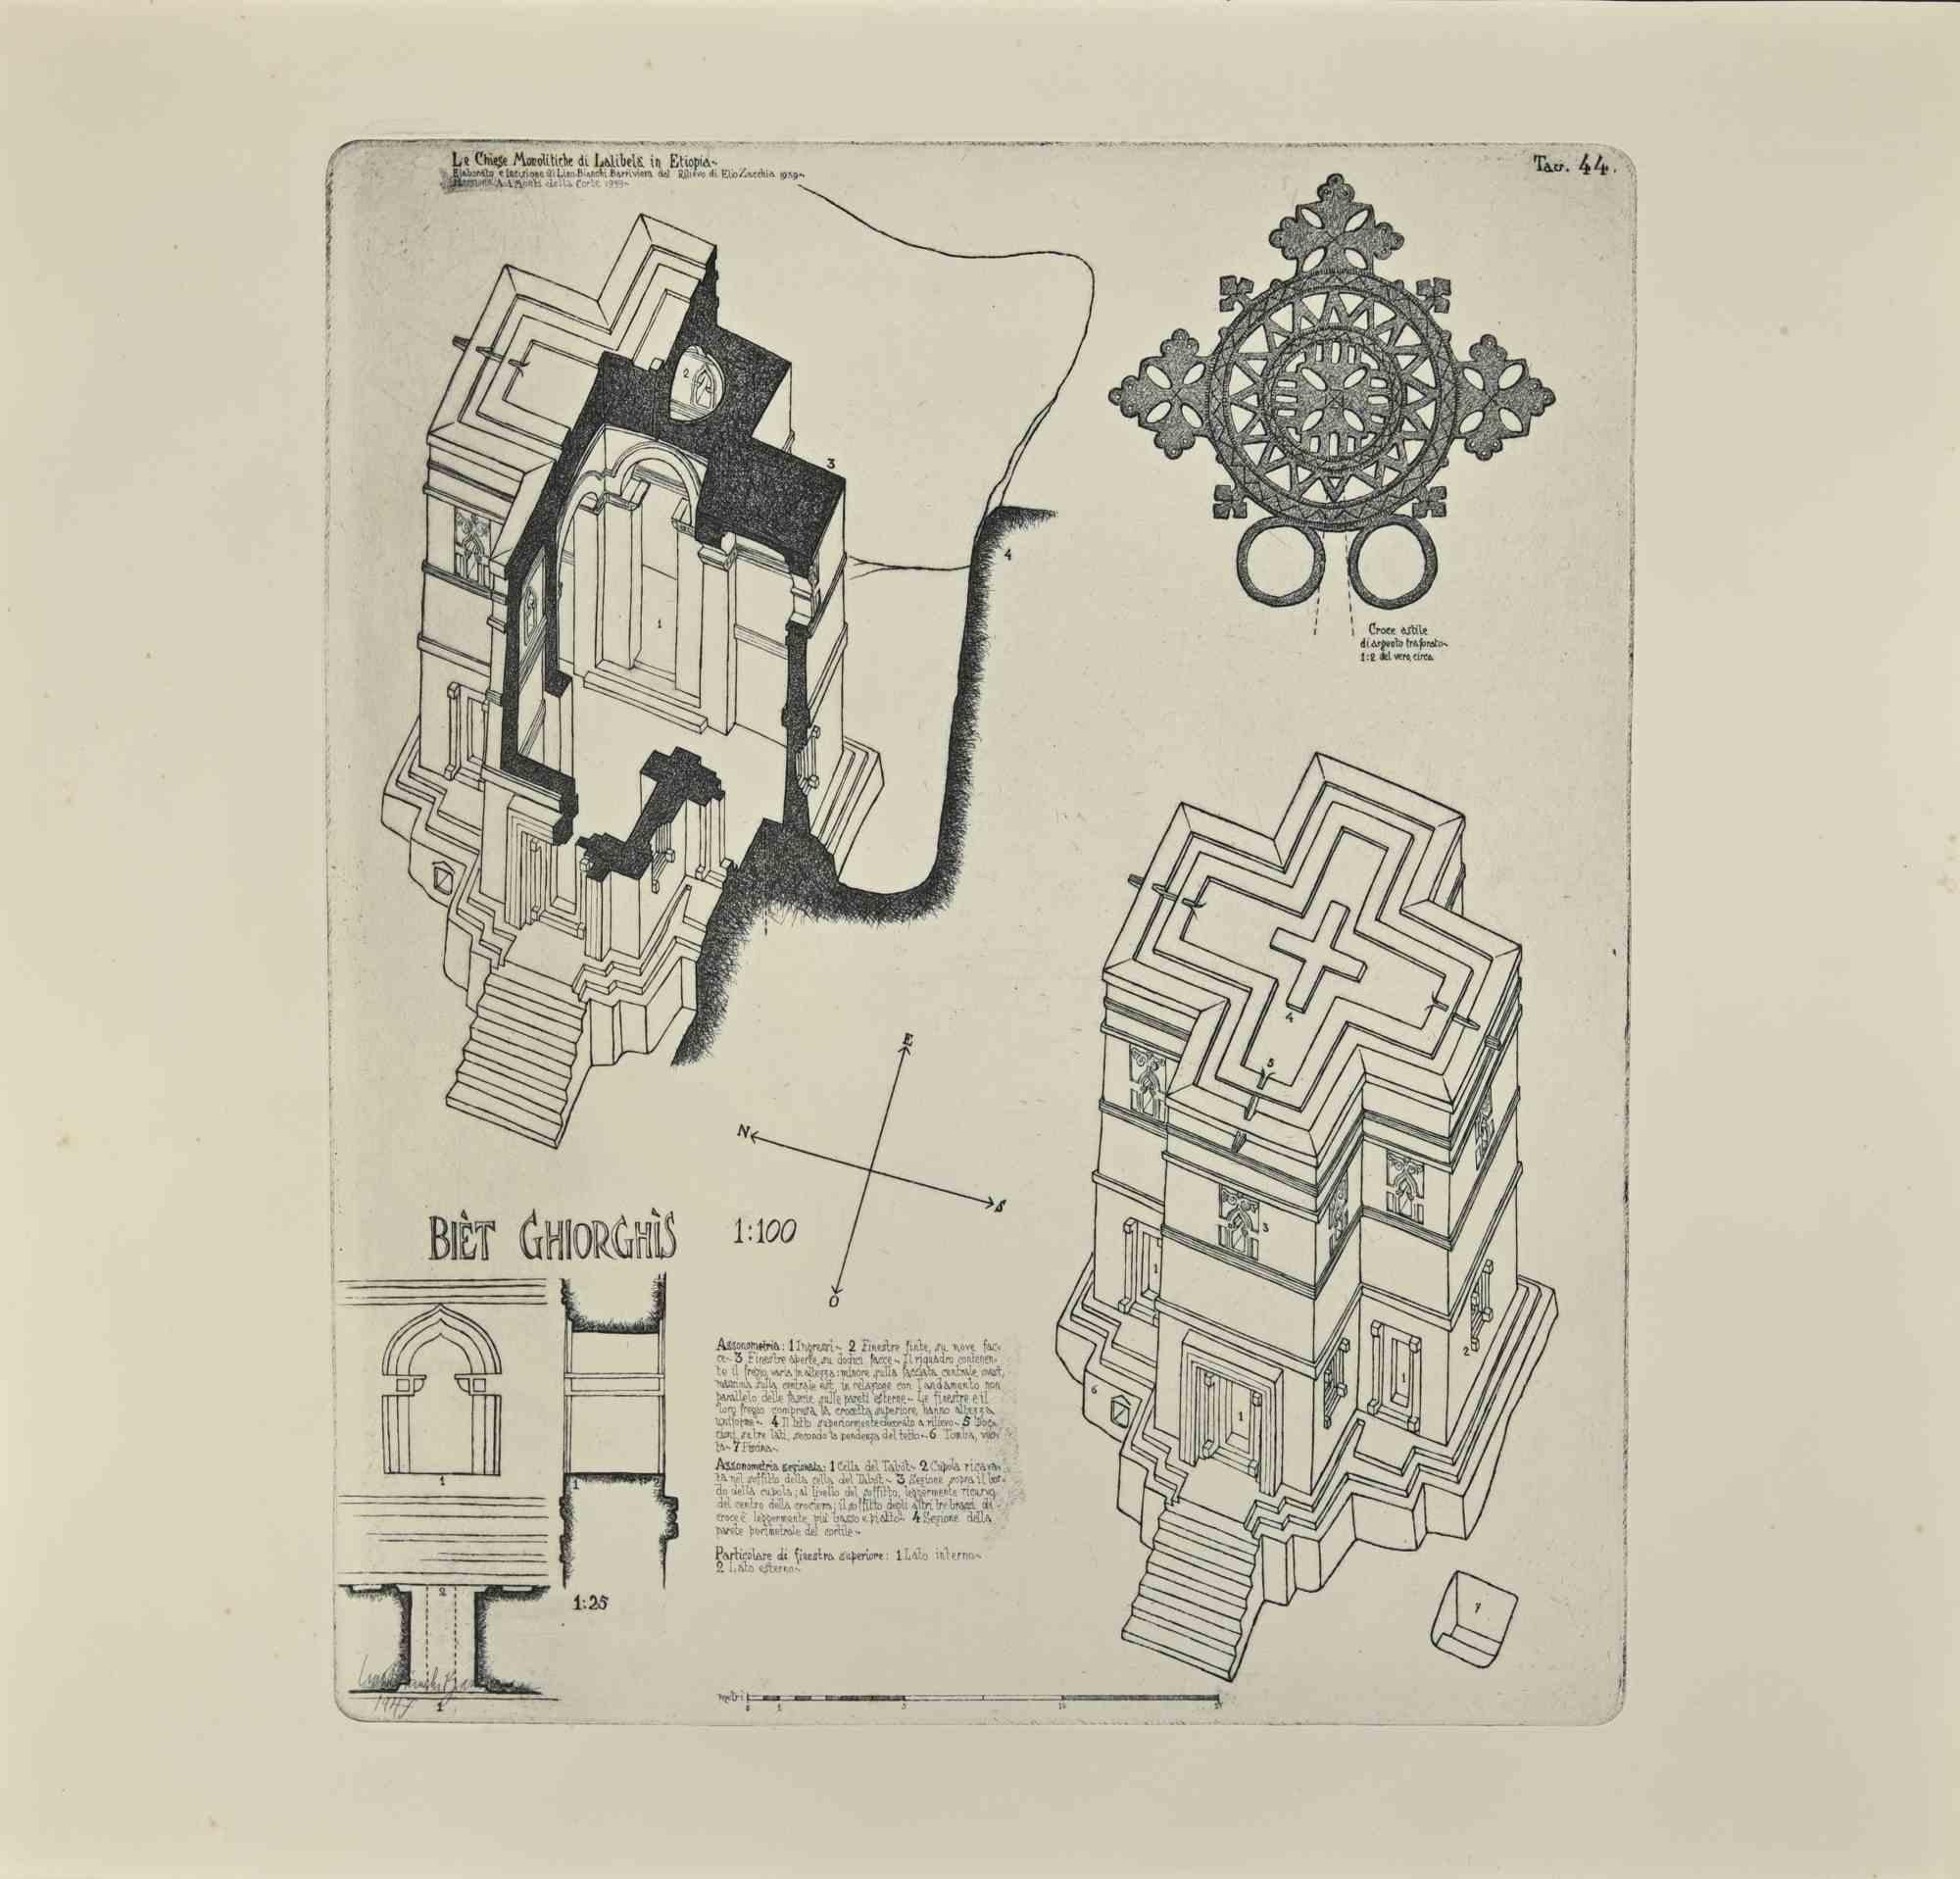 Biet Ghiorghis ist ein modernes Kunstwerk von Lino Bianchi Barriviera aus dem Jahr 1947.

Schwarze und weiße Radierung.

Signiert und datiert auf der Platte.

Tafel n.44 (wie am oberen Rand angegeben).

Das Kunstwerk stammt aus der Serie "Die